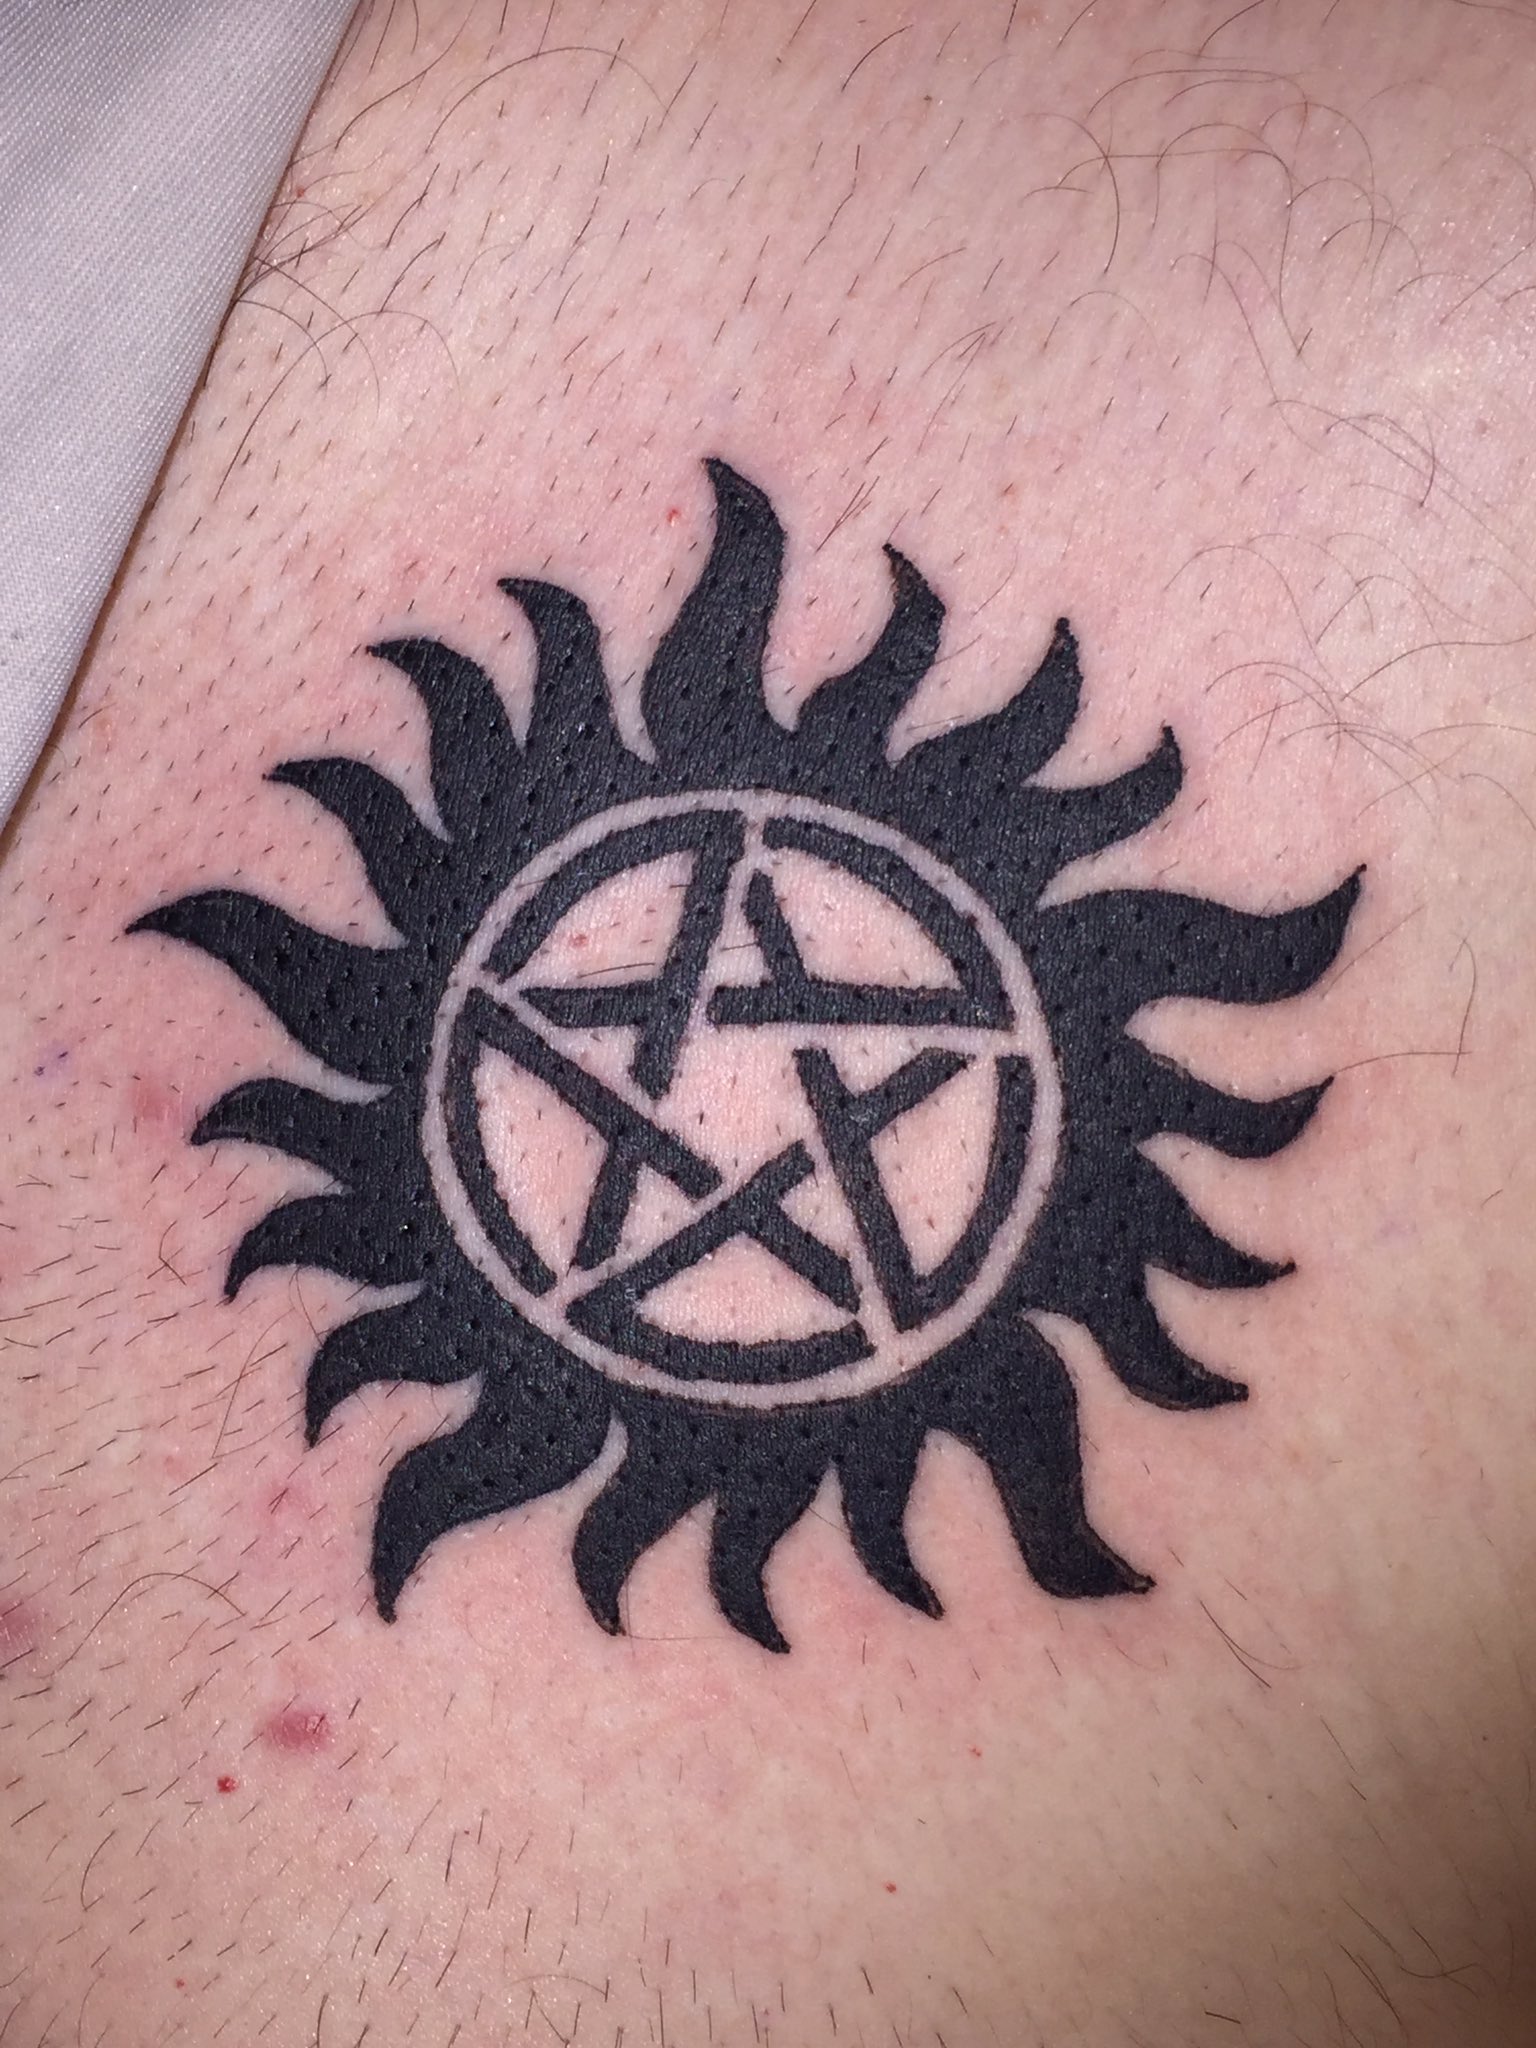 Supernatural tattoo, Nerd tattoo, Classic tattoo